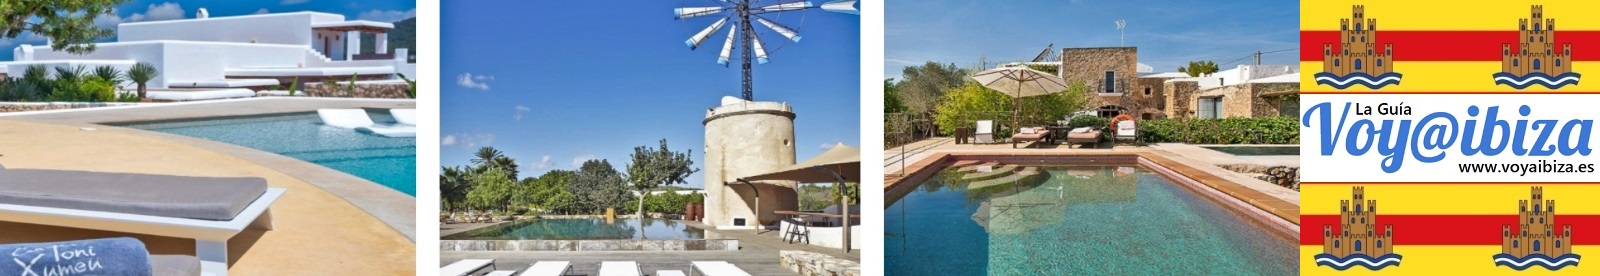 Turisme Rural Eivissa - Agroturisme (II)